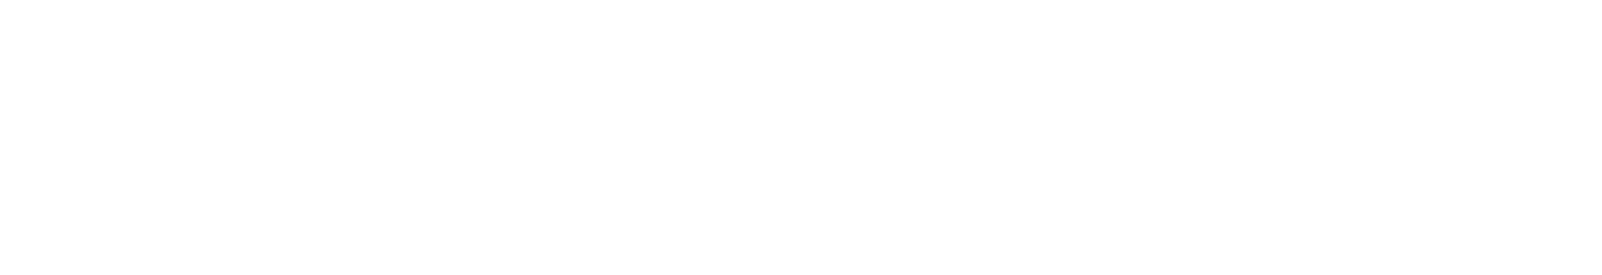 Manitex International logo large for dark backgrounds (transparent PNG)